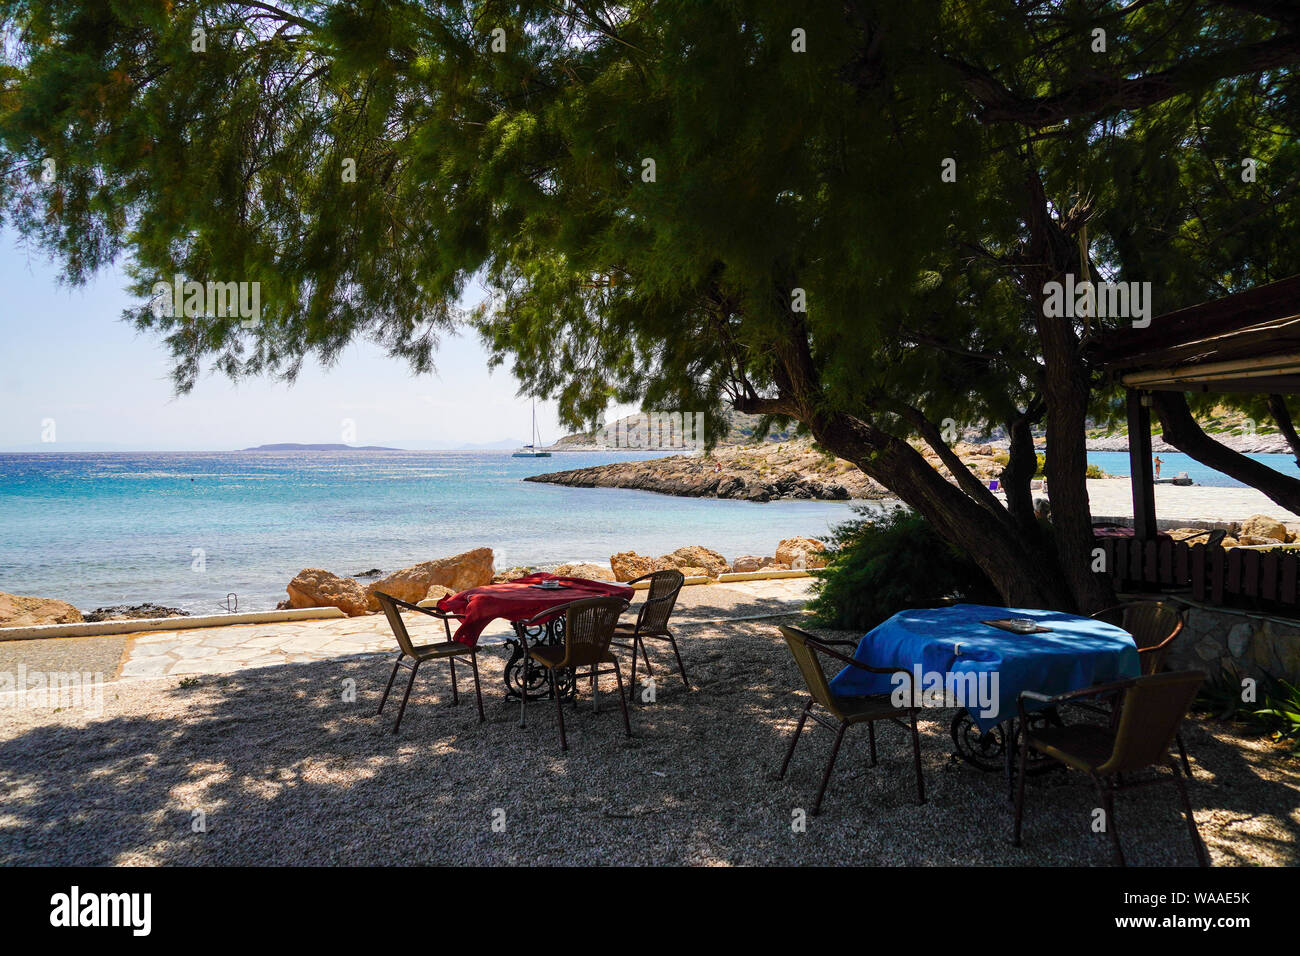 The beach and Mediterranean Sea, Cape Sounion, Attica, Greece Stock Photo